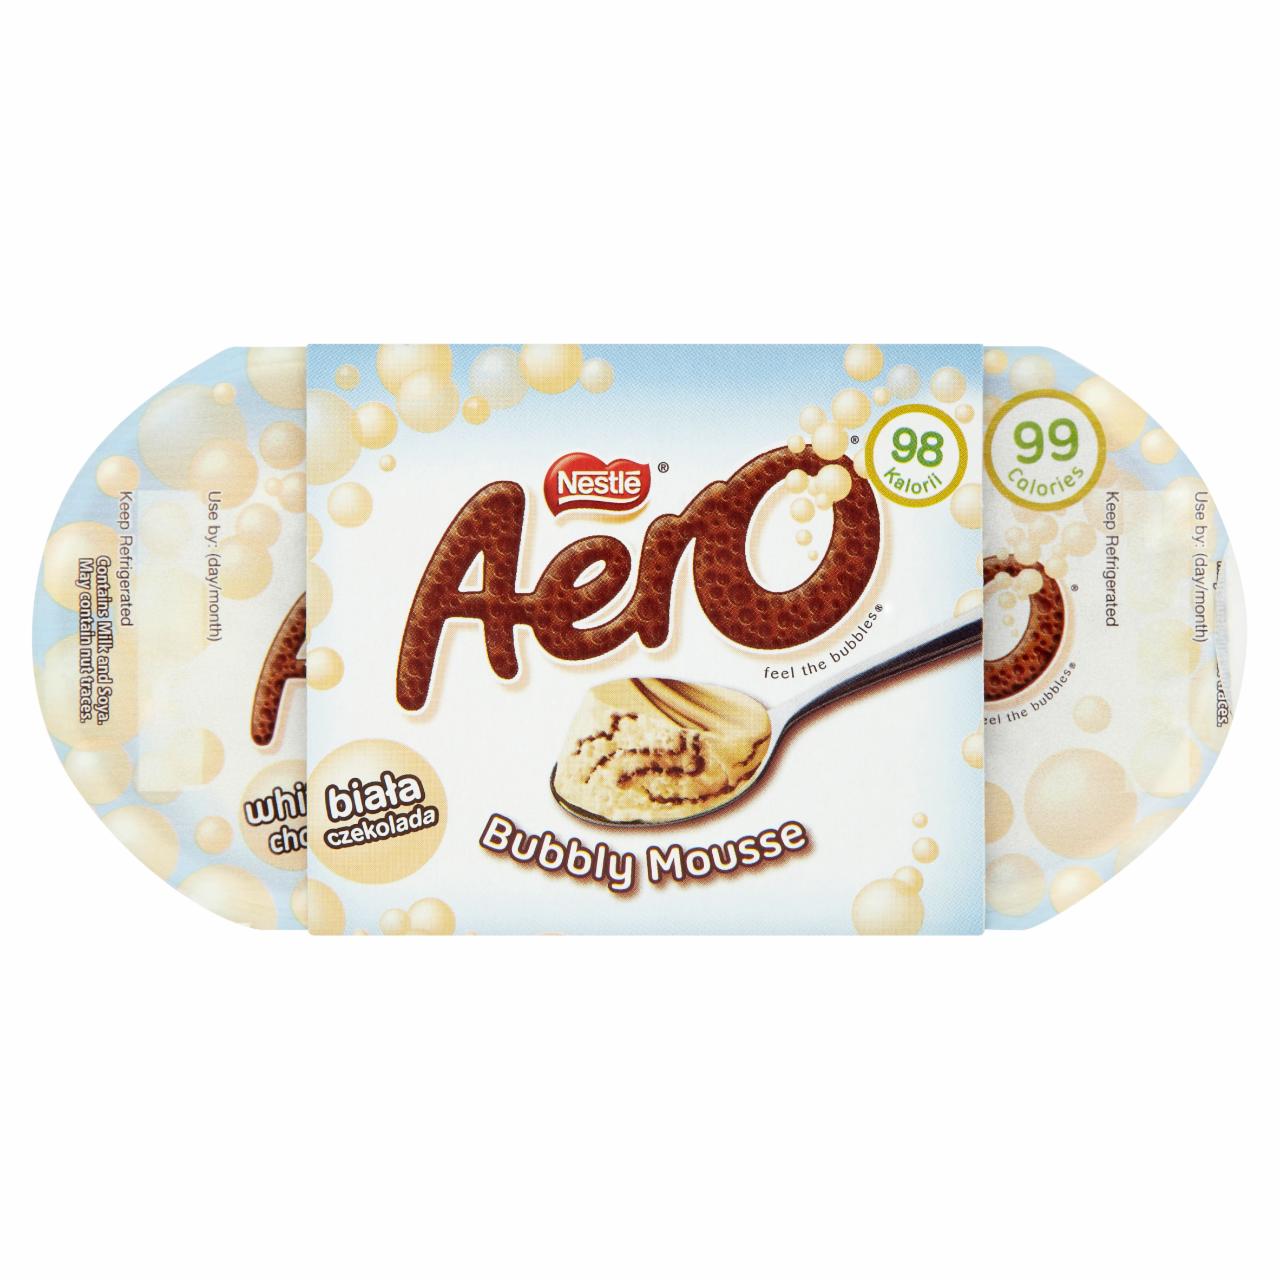 Képek - Nestlé Aero Mousse fehér habkrém csokoládé öntettel 4 x 58 g